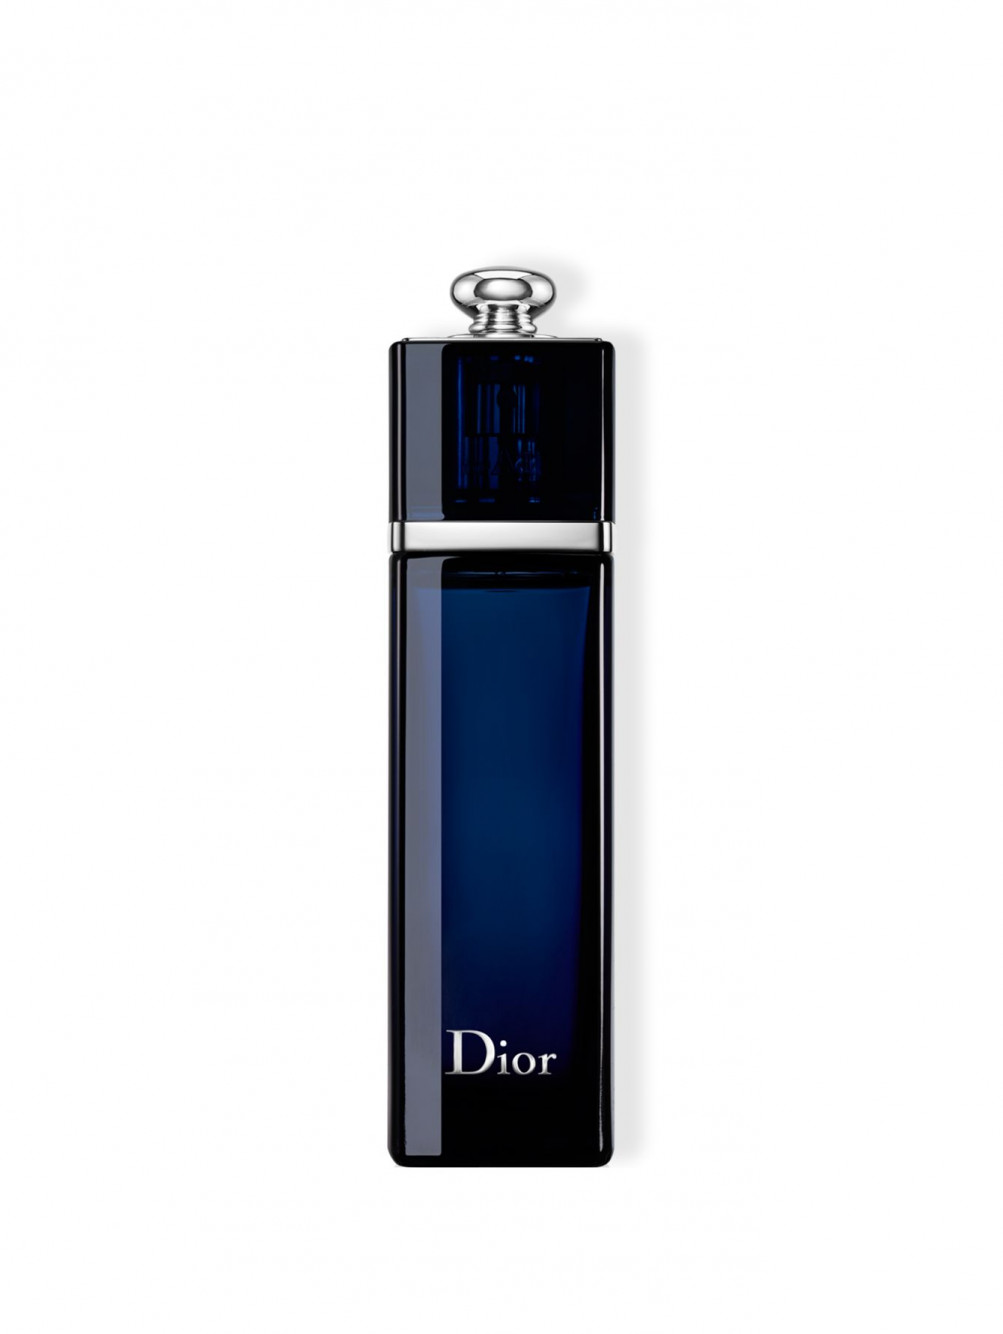 Dior Addict Парфюмерная вода  100 мл - Общий вид